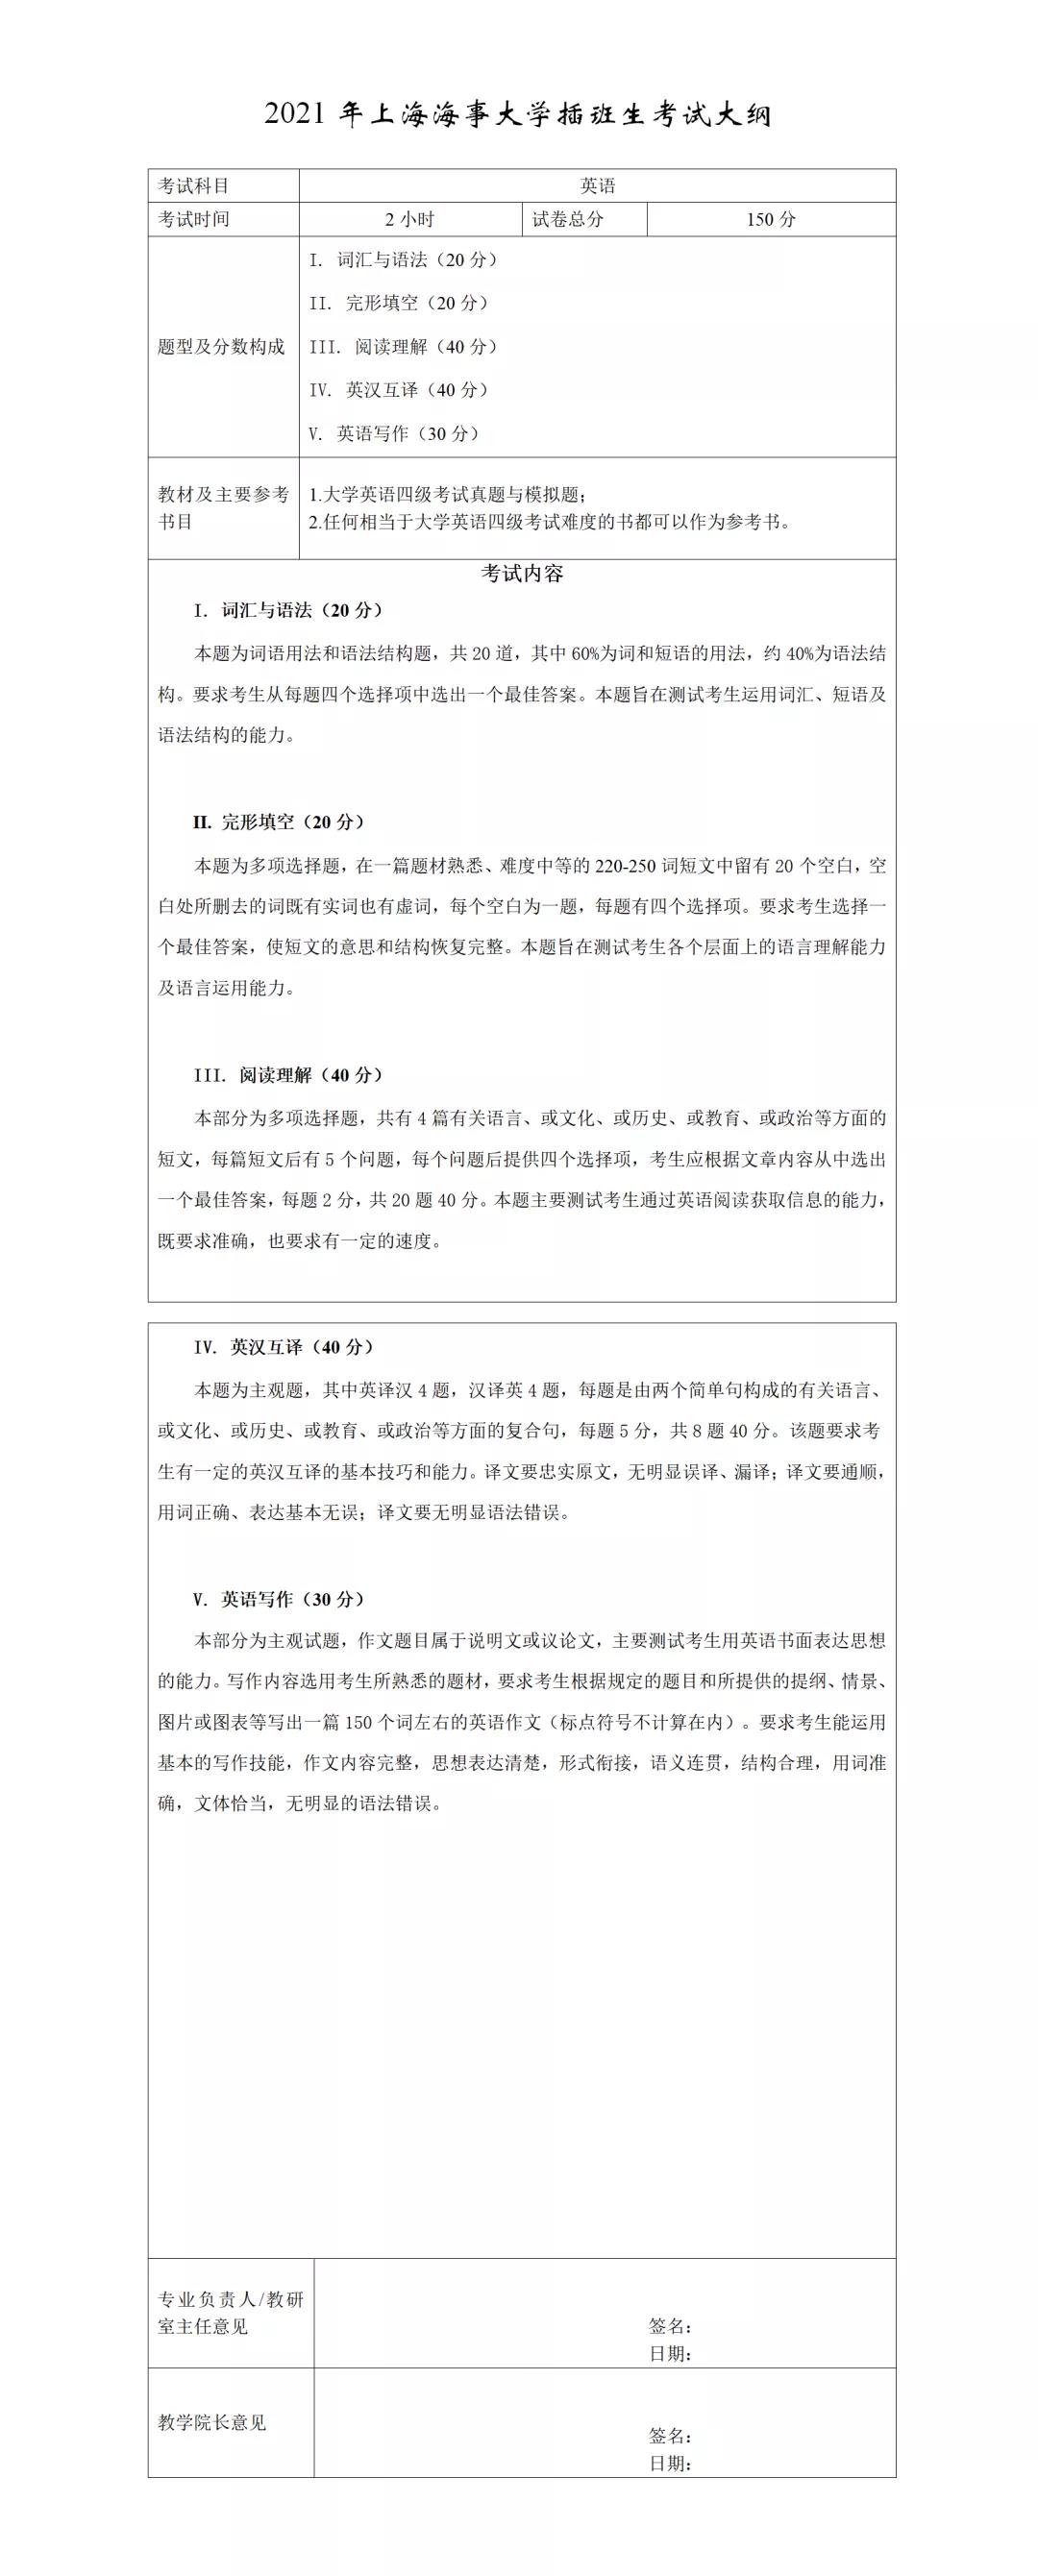 上海海事大学2021年插班生考试大纲现已公布，快来了解一下今年的大纲内容吧！(图8)